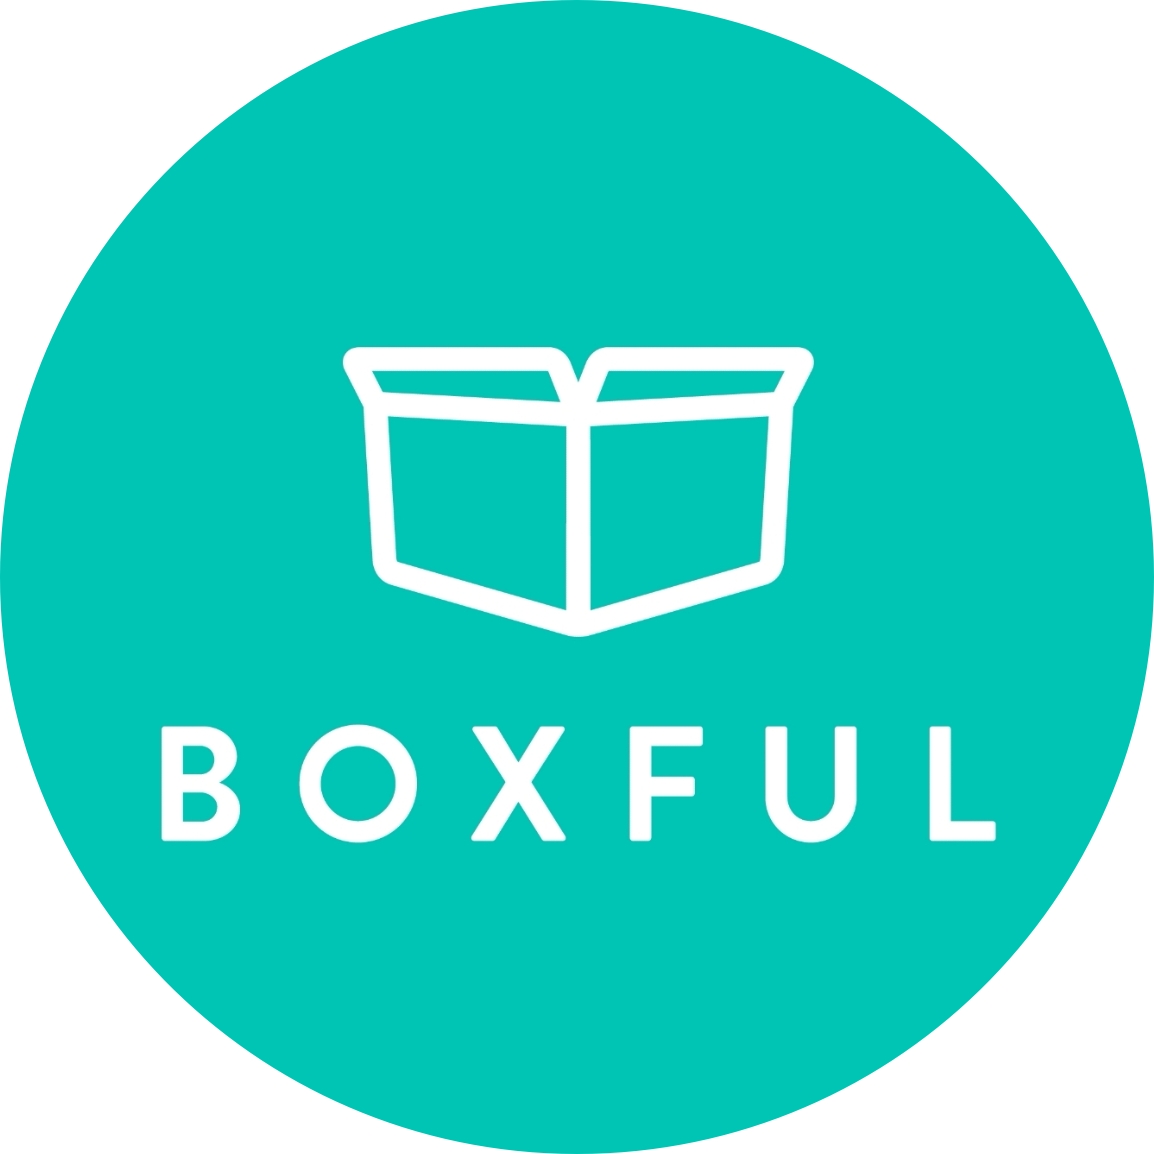 About BOXFUL